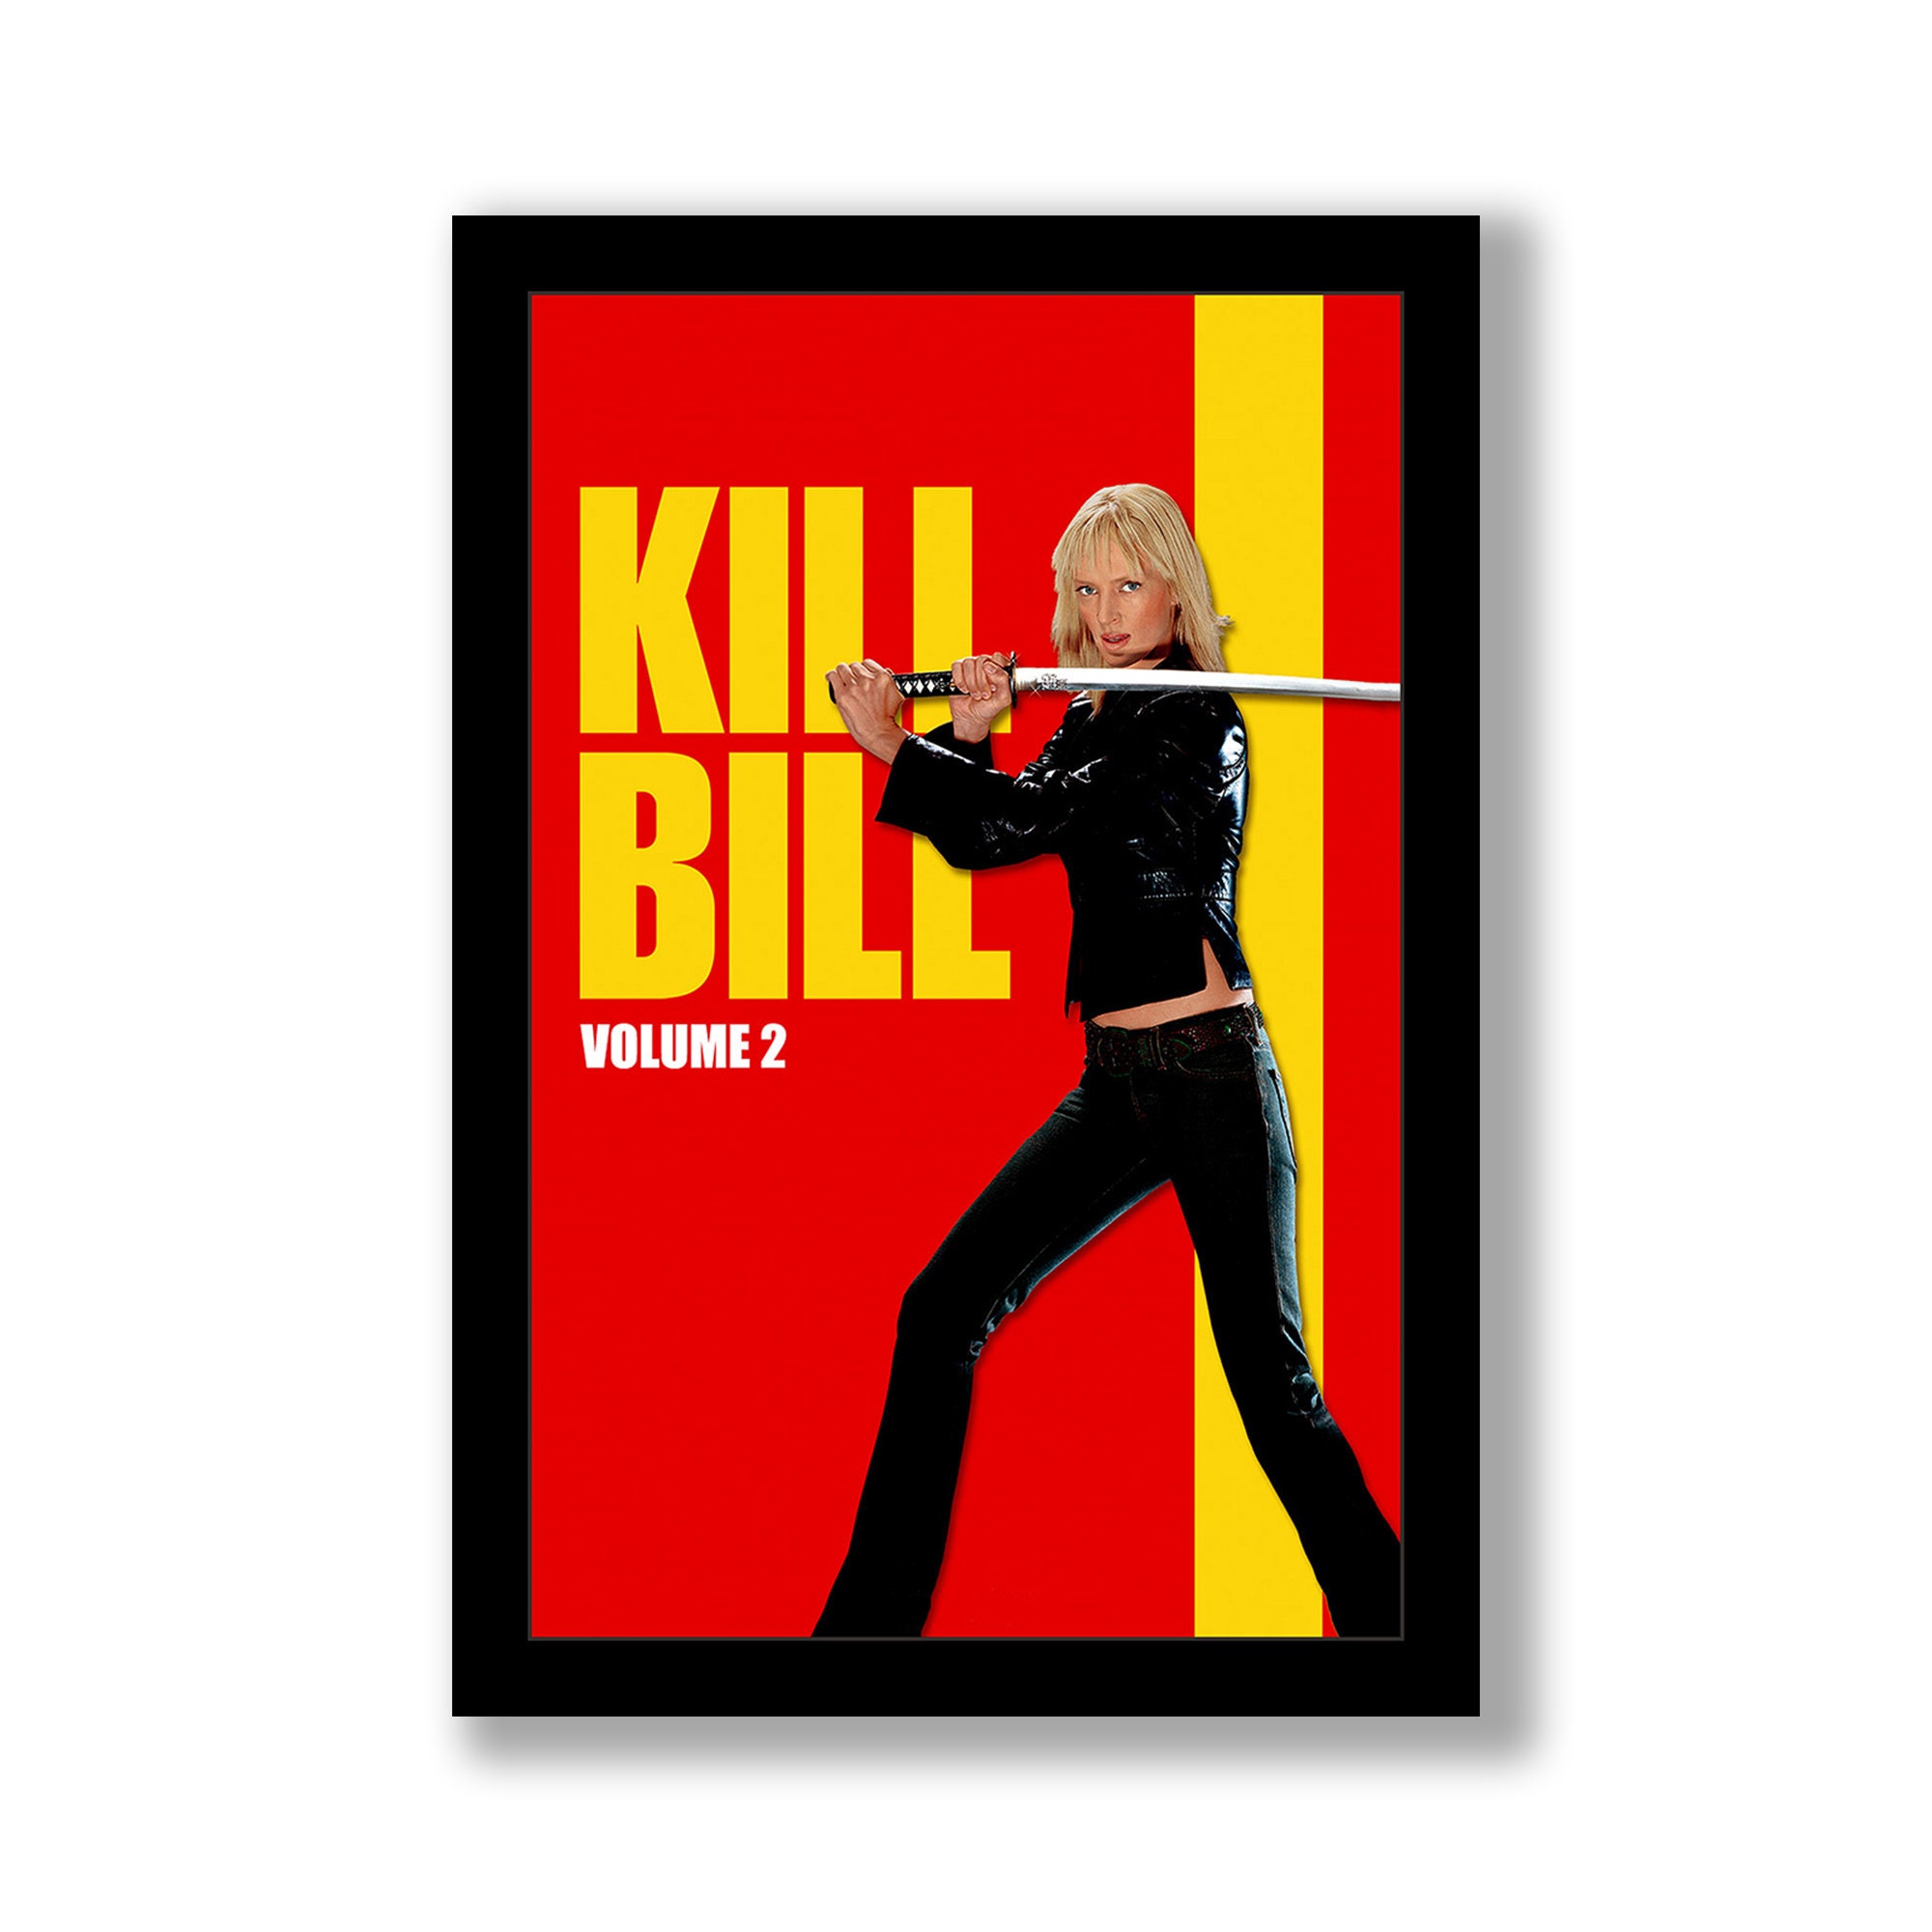 kill bill 2 movie poster